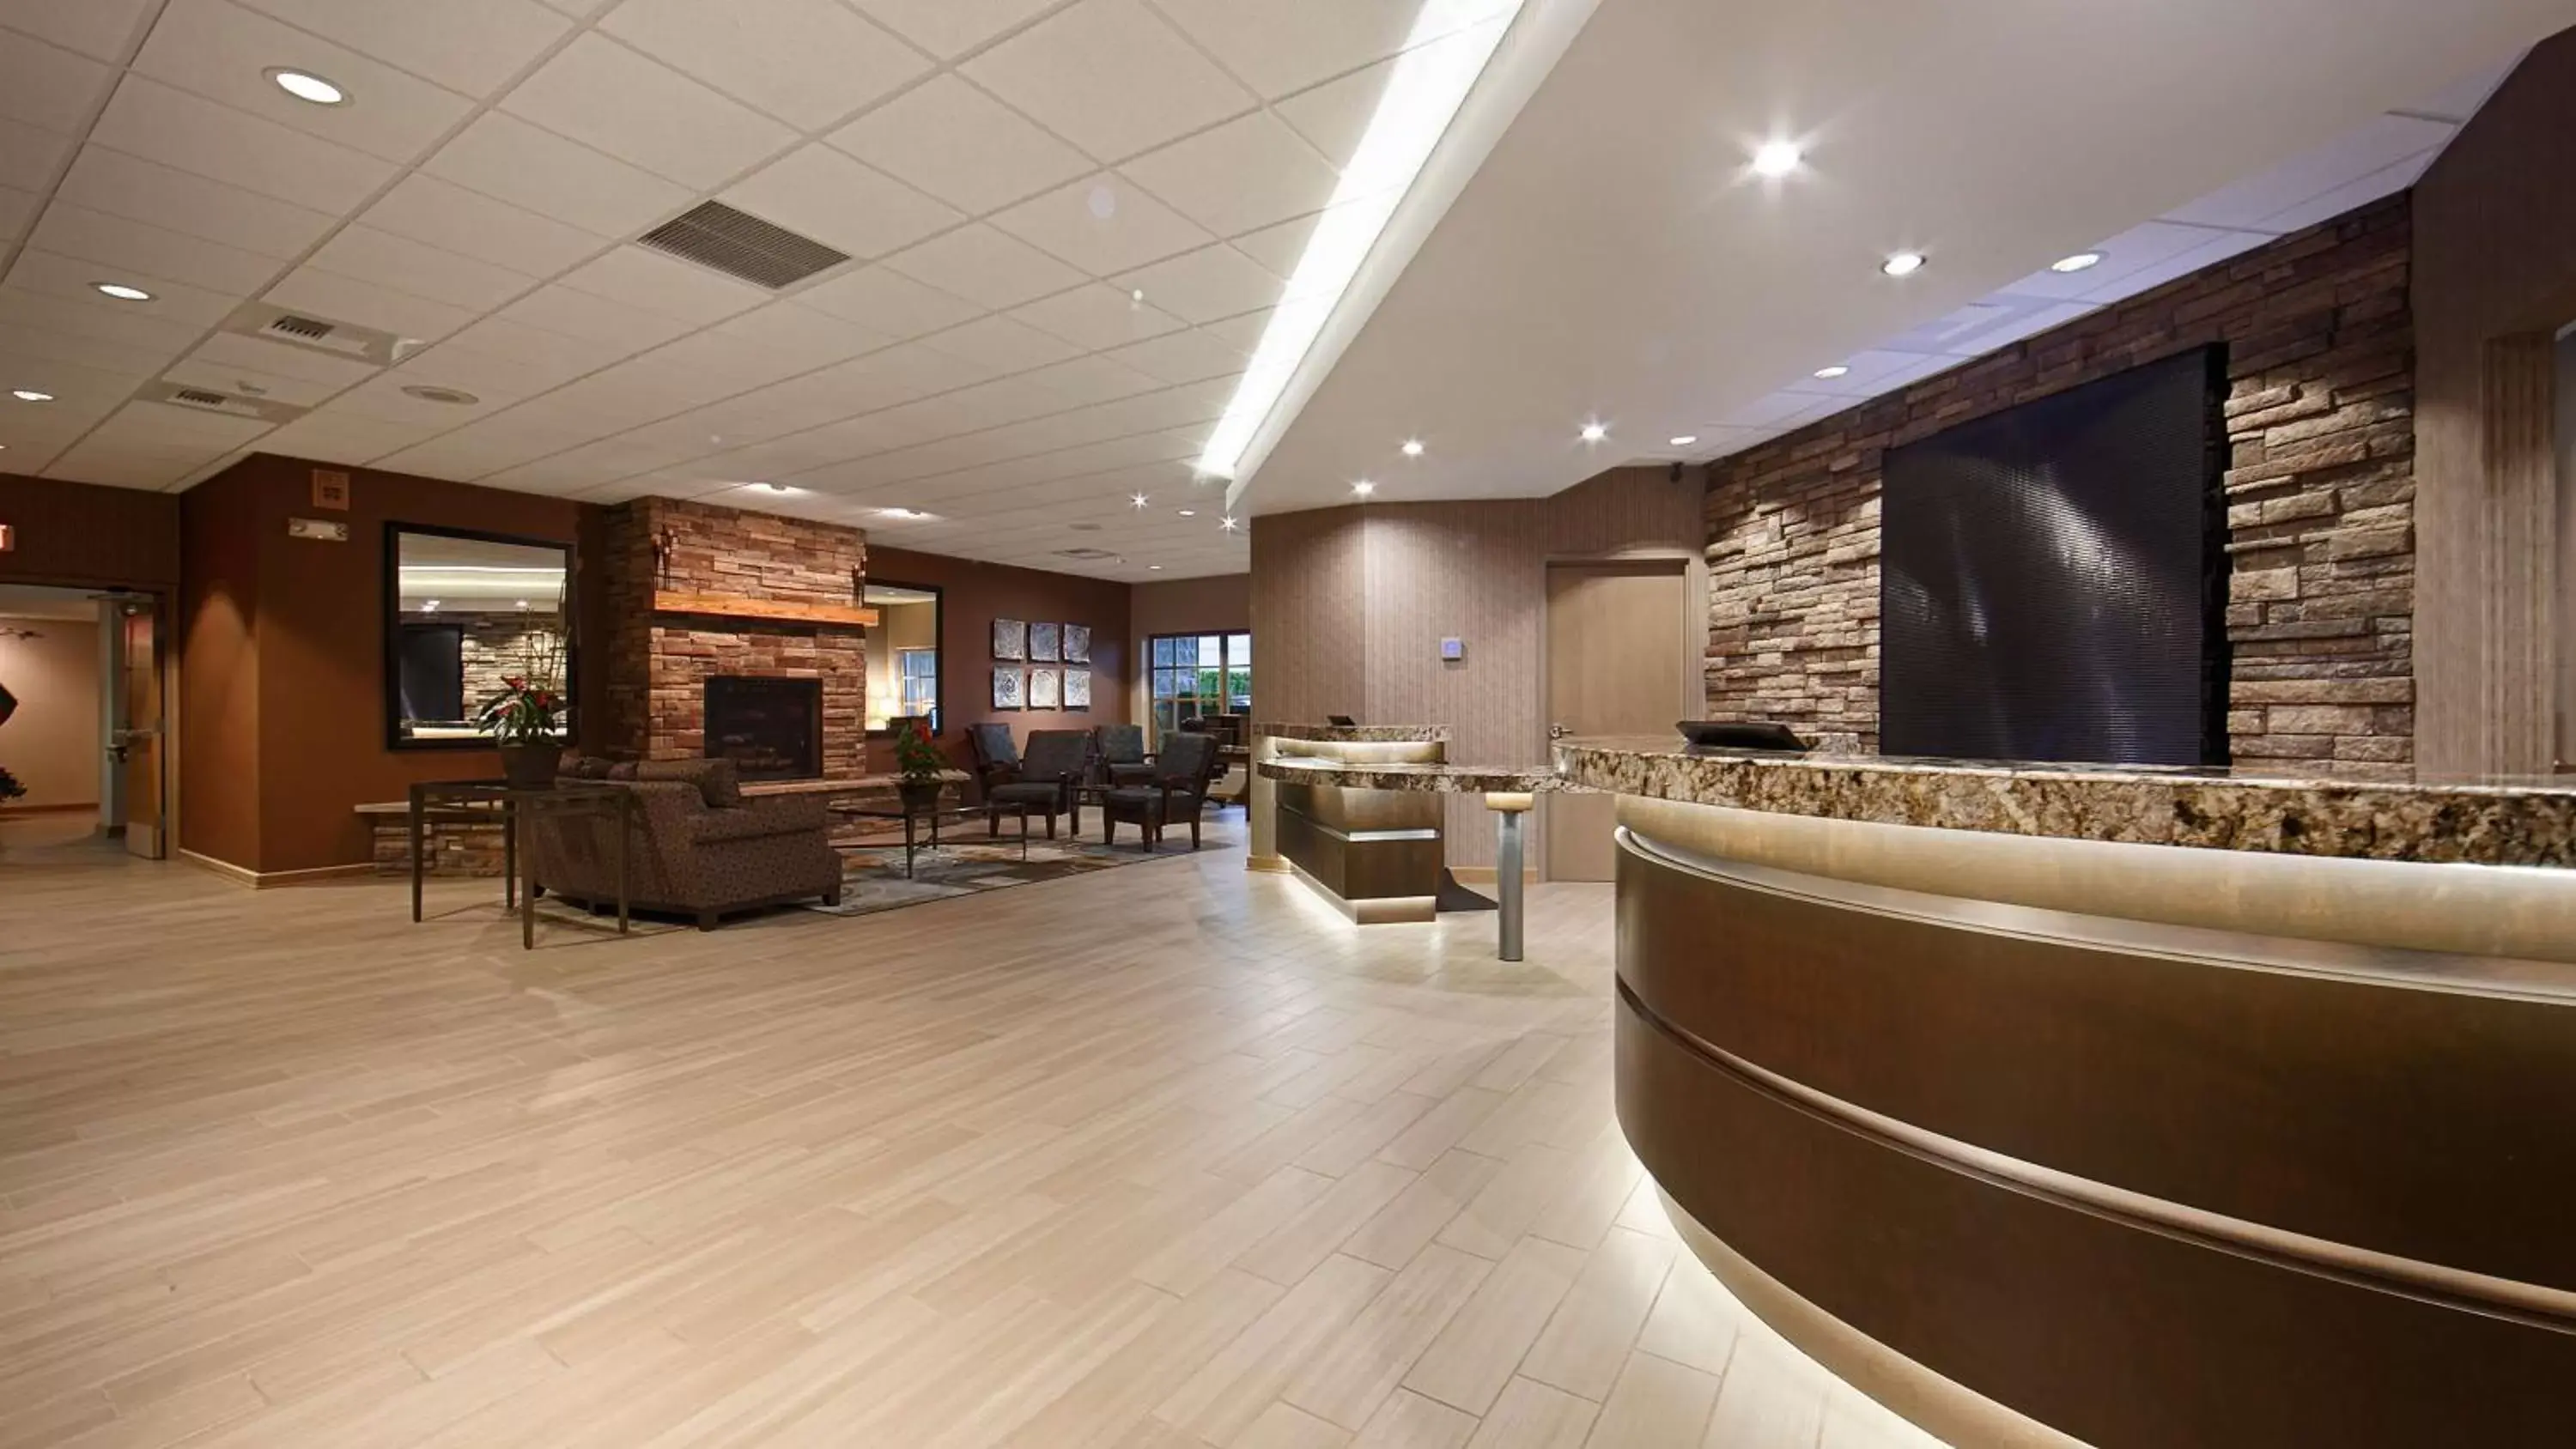 Lobby or reception, Lobby/Reception in Best Western Plus Coeur d'Alene Inn